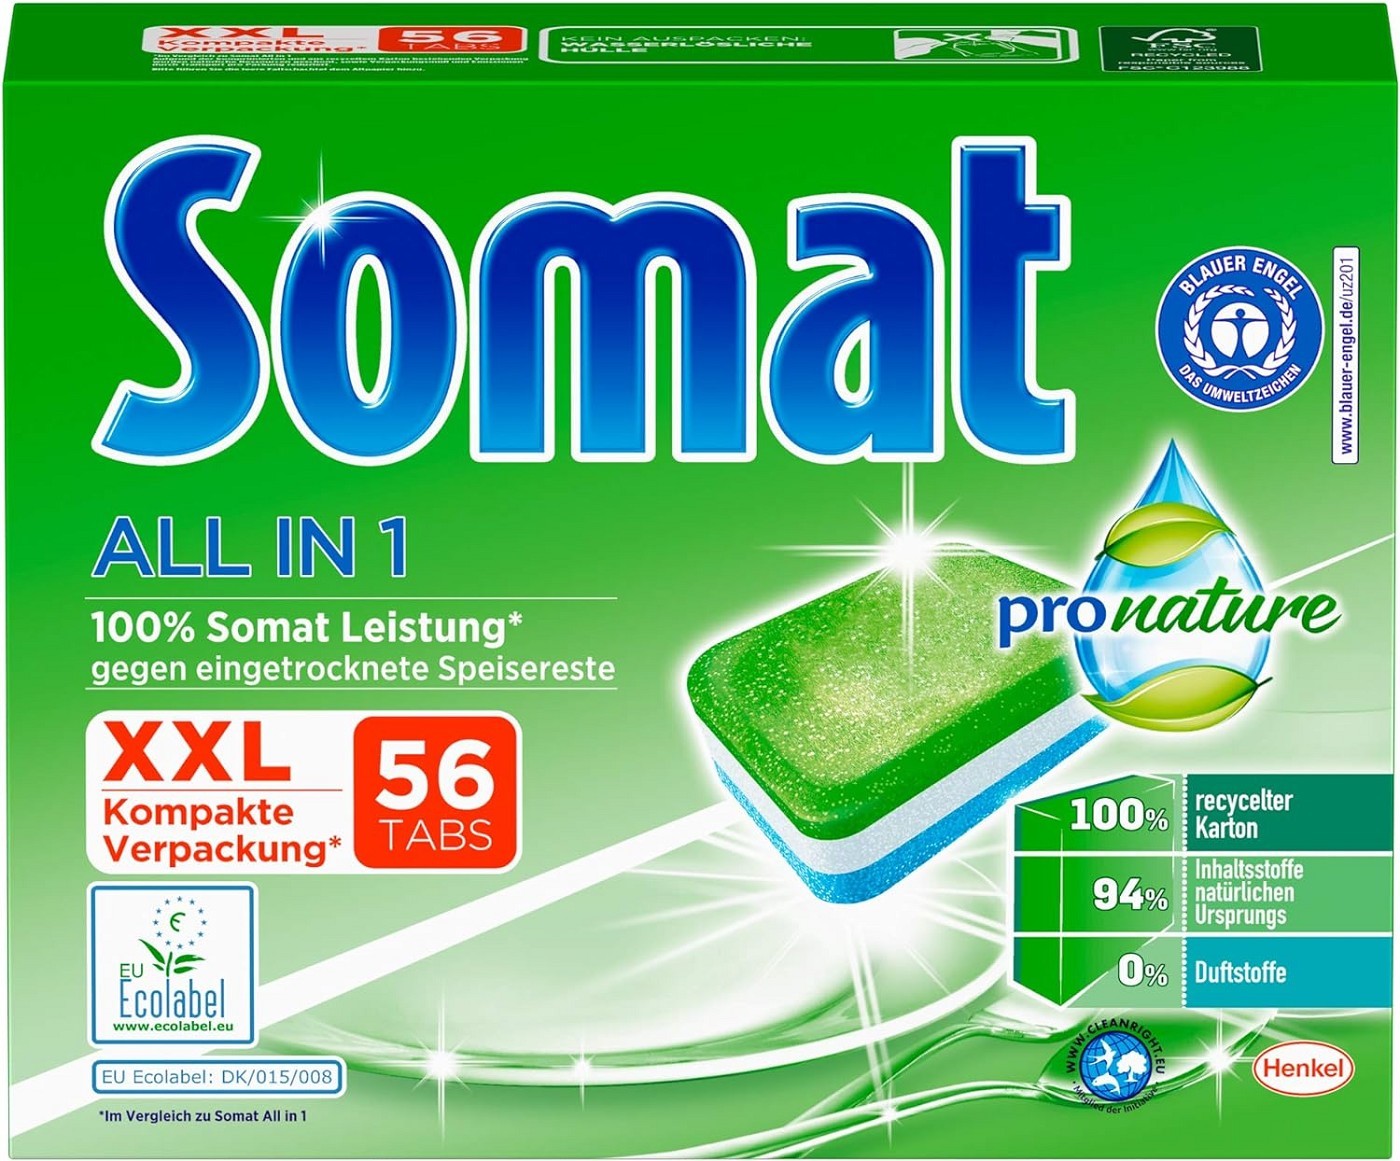 Somat All in 1 Pro Nature Spülmaschinen-Tabs, 56 Tabs